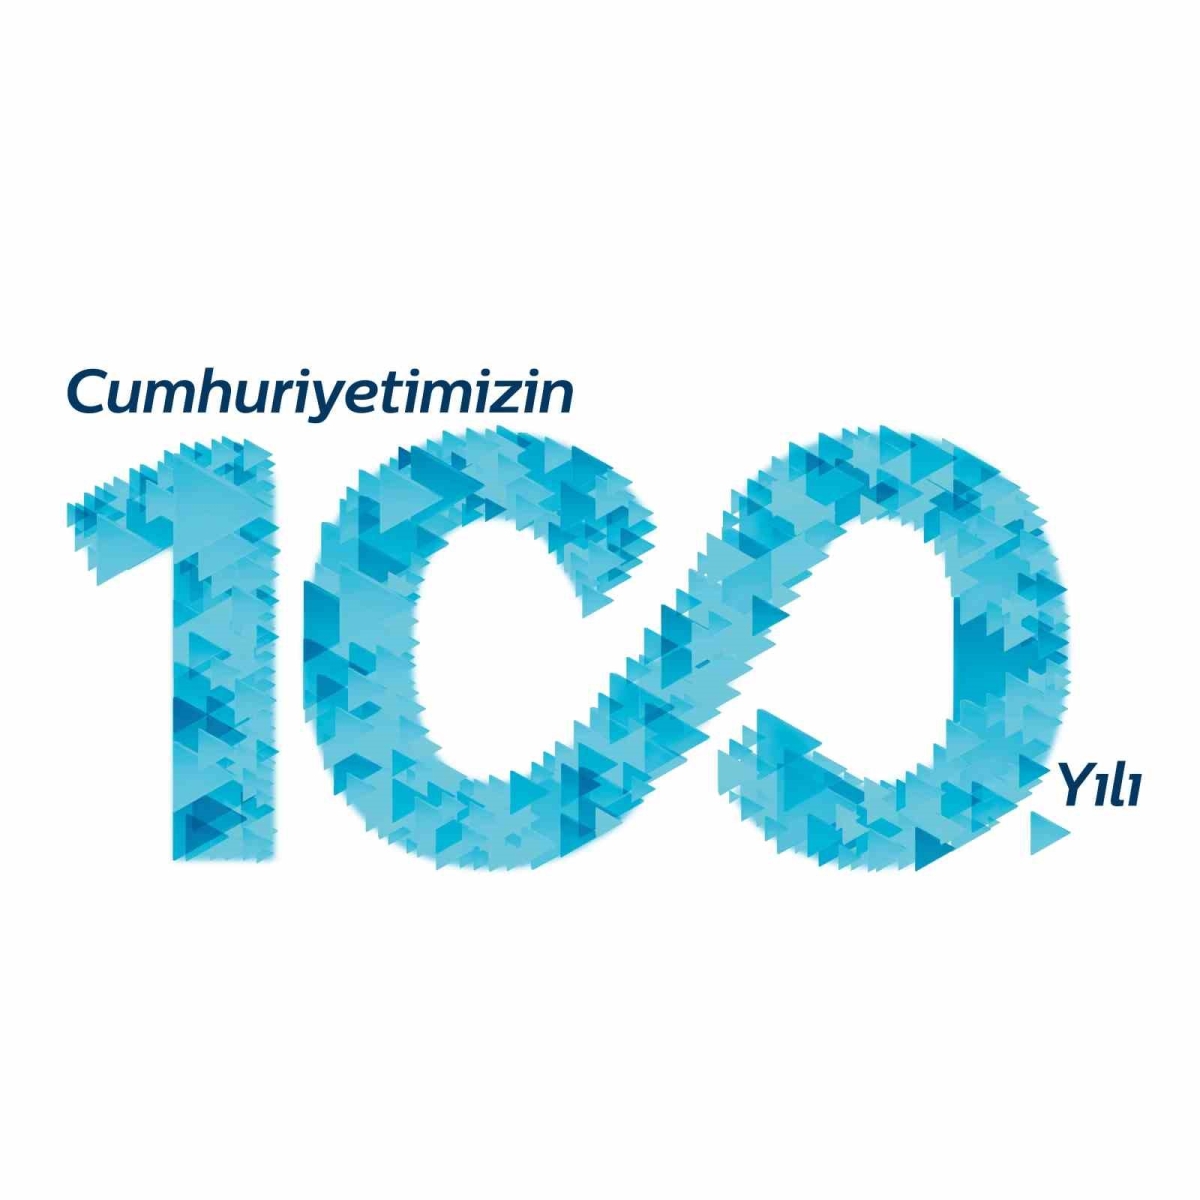 Muud’dan Cumhuriyet’in 100. Yılına özel liste
